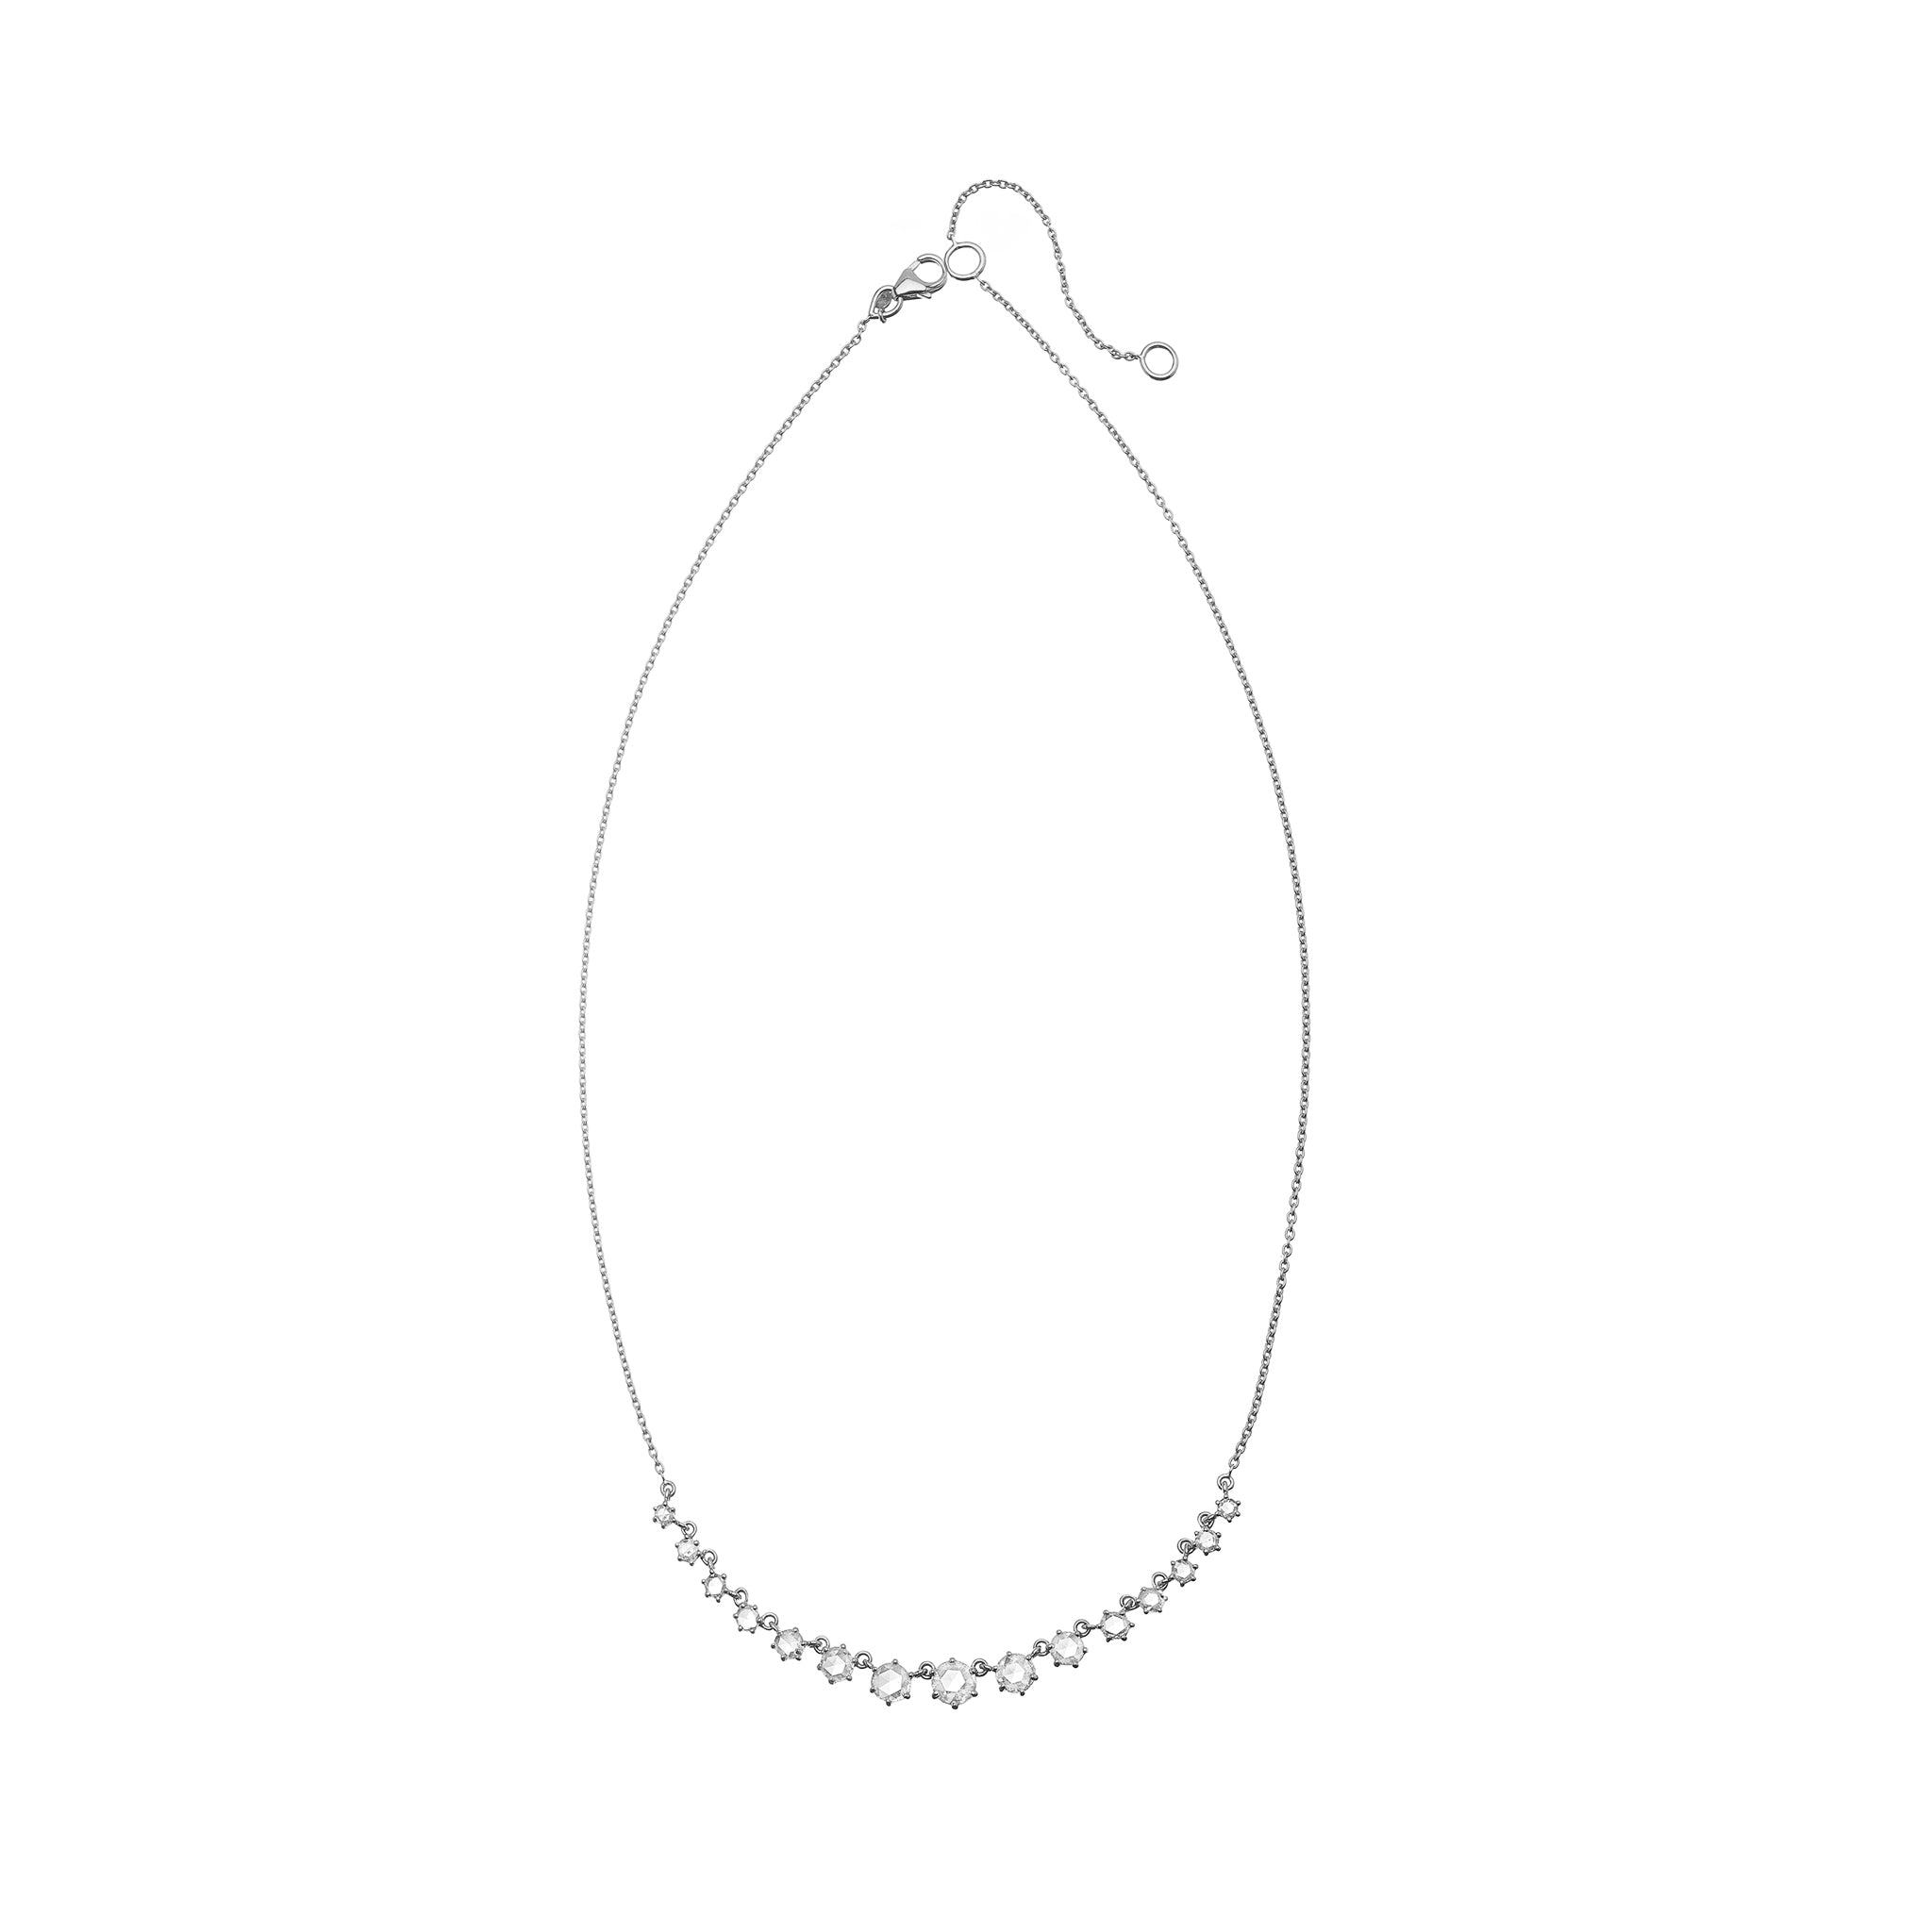 Alexa White Diamond Necklace